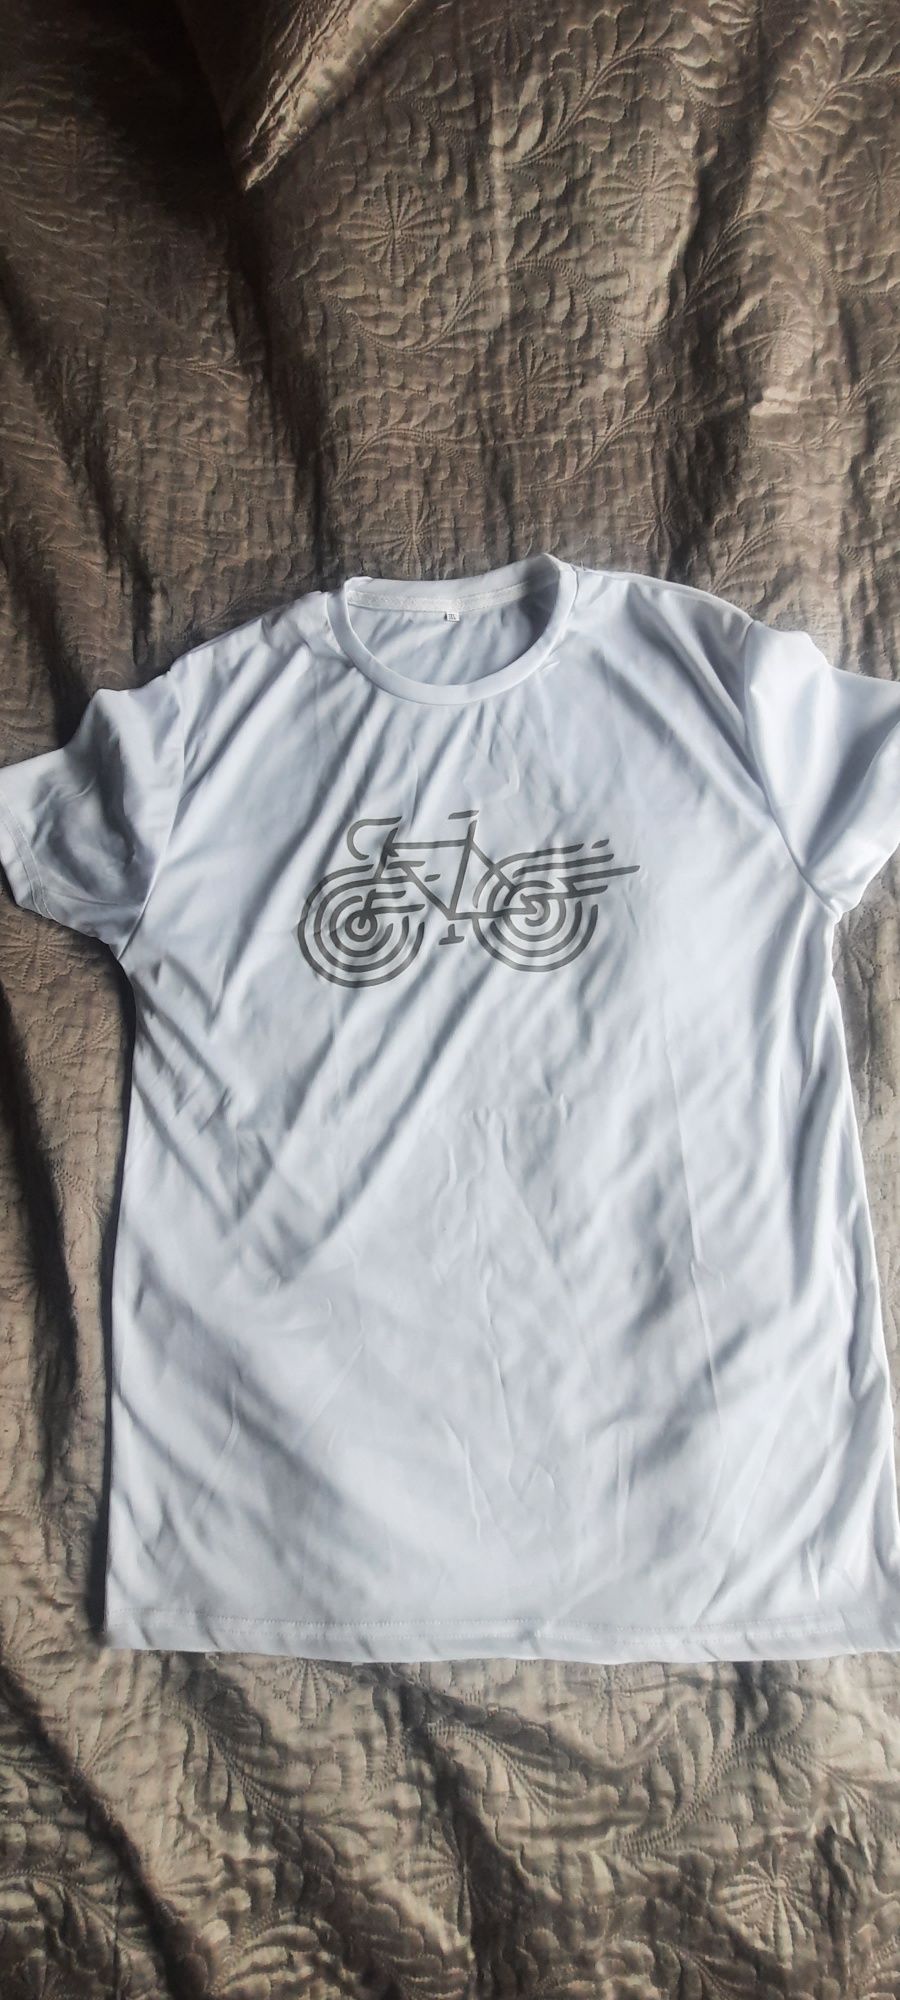 Koszulka rowerowa 3xl